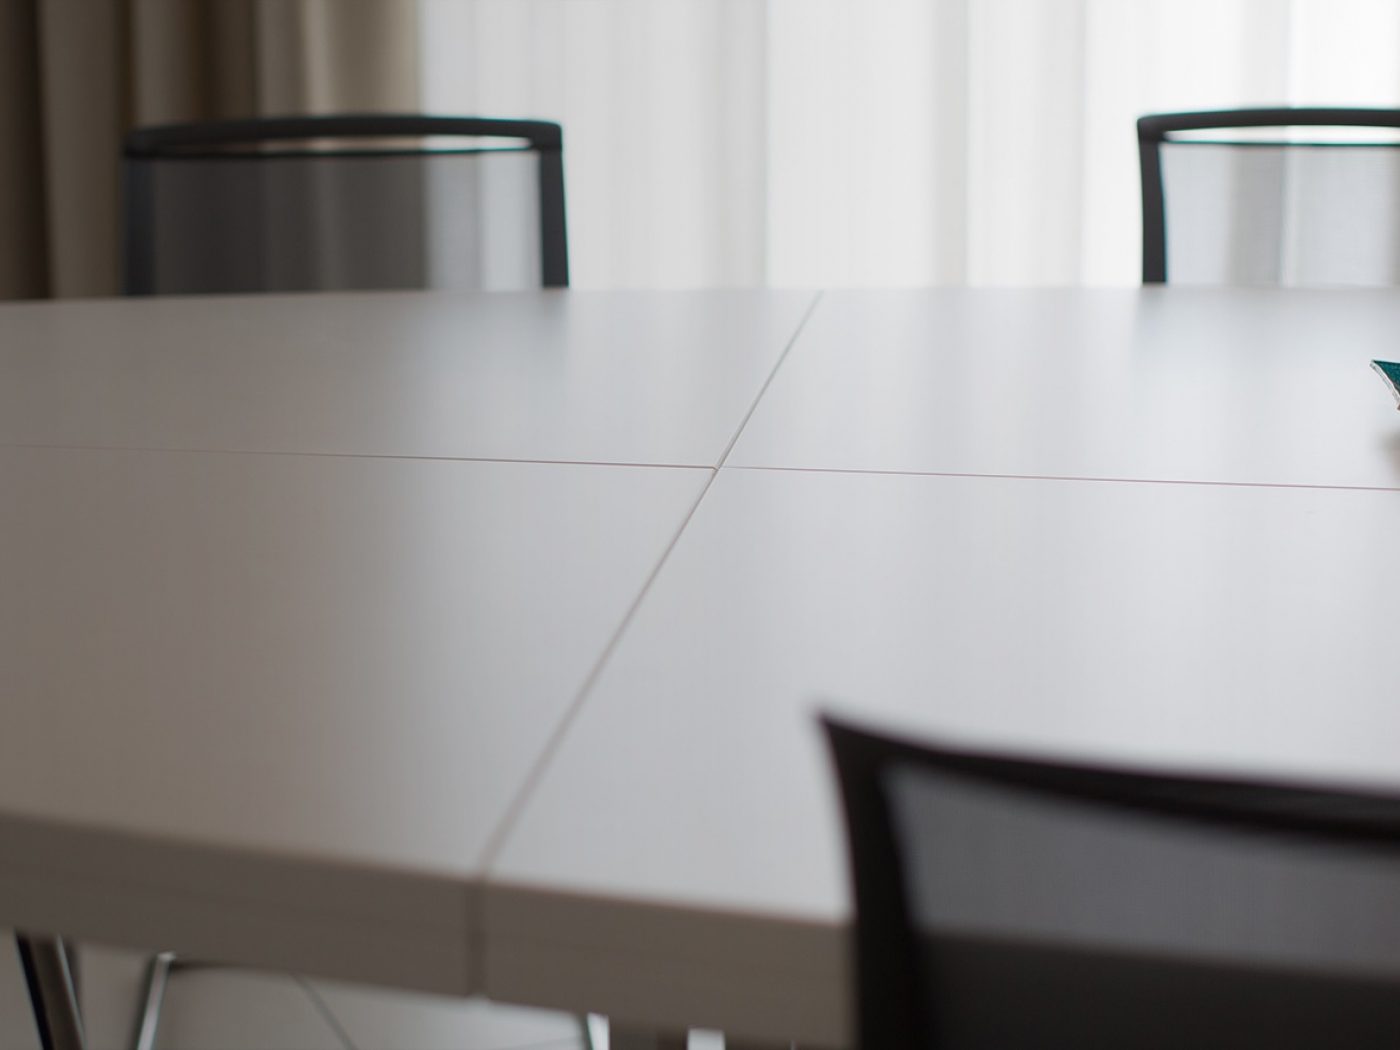 Tavolo riunioni ovale realizzato su misura in color avorio.